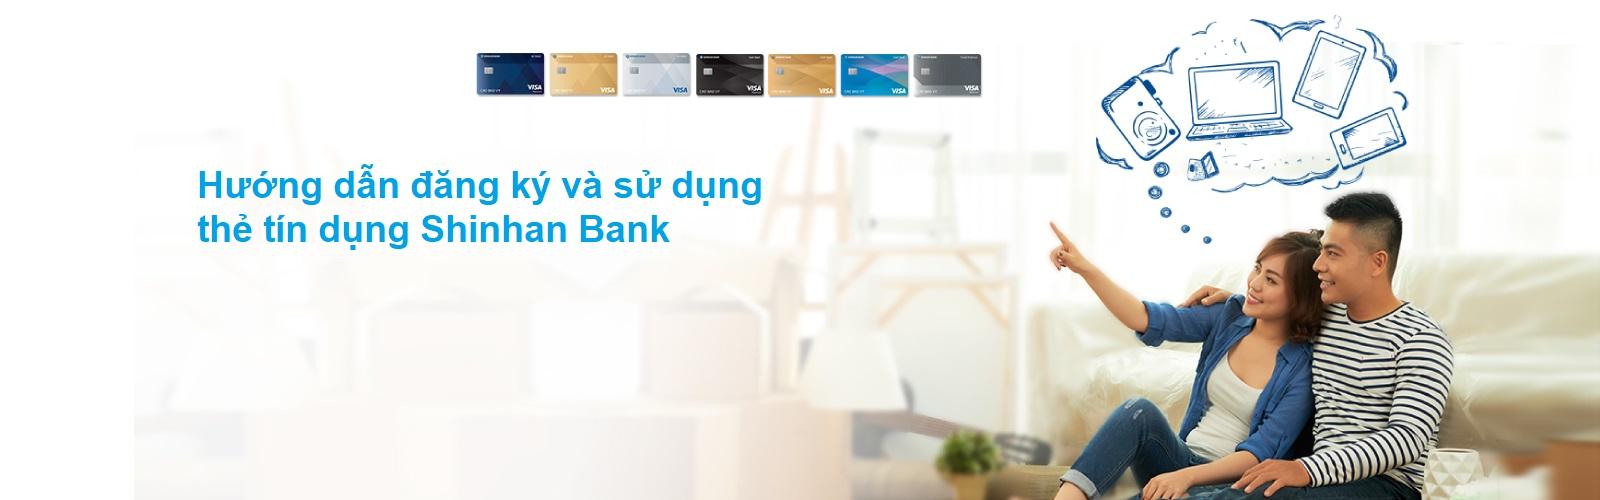 Hướng dẫn đăng ký và sử dụng thẻ tín dụng Shinhan Bank chi tiết nhất